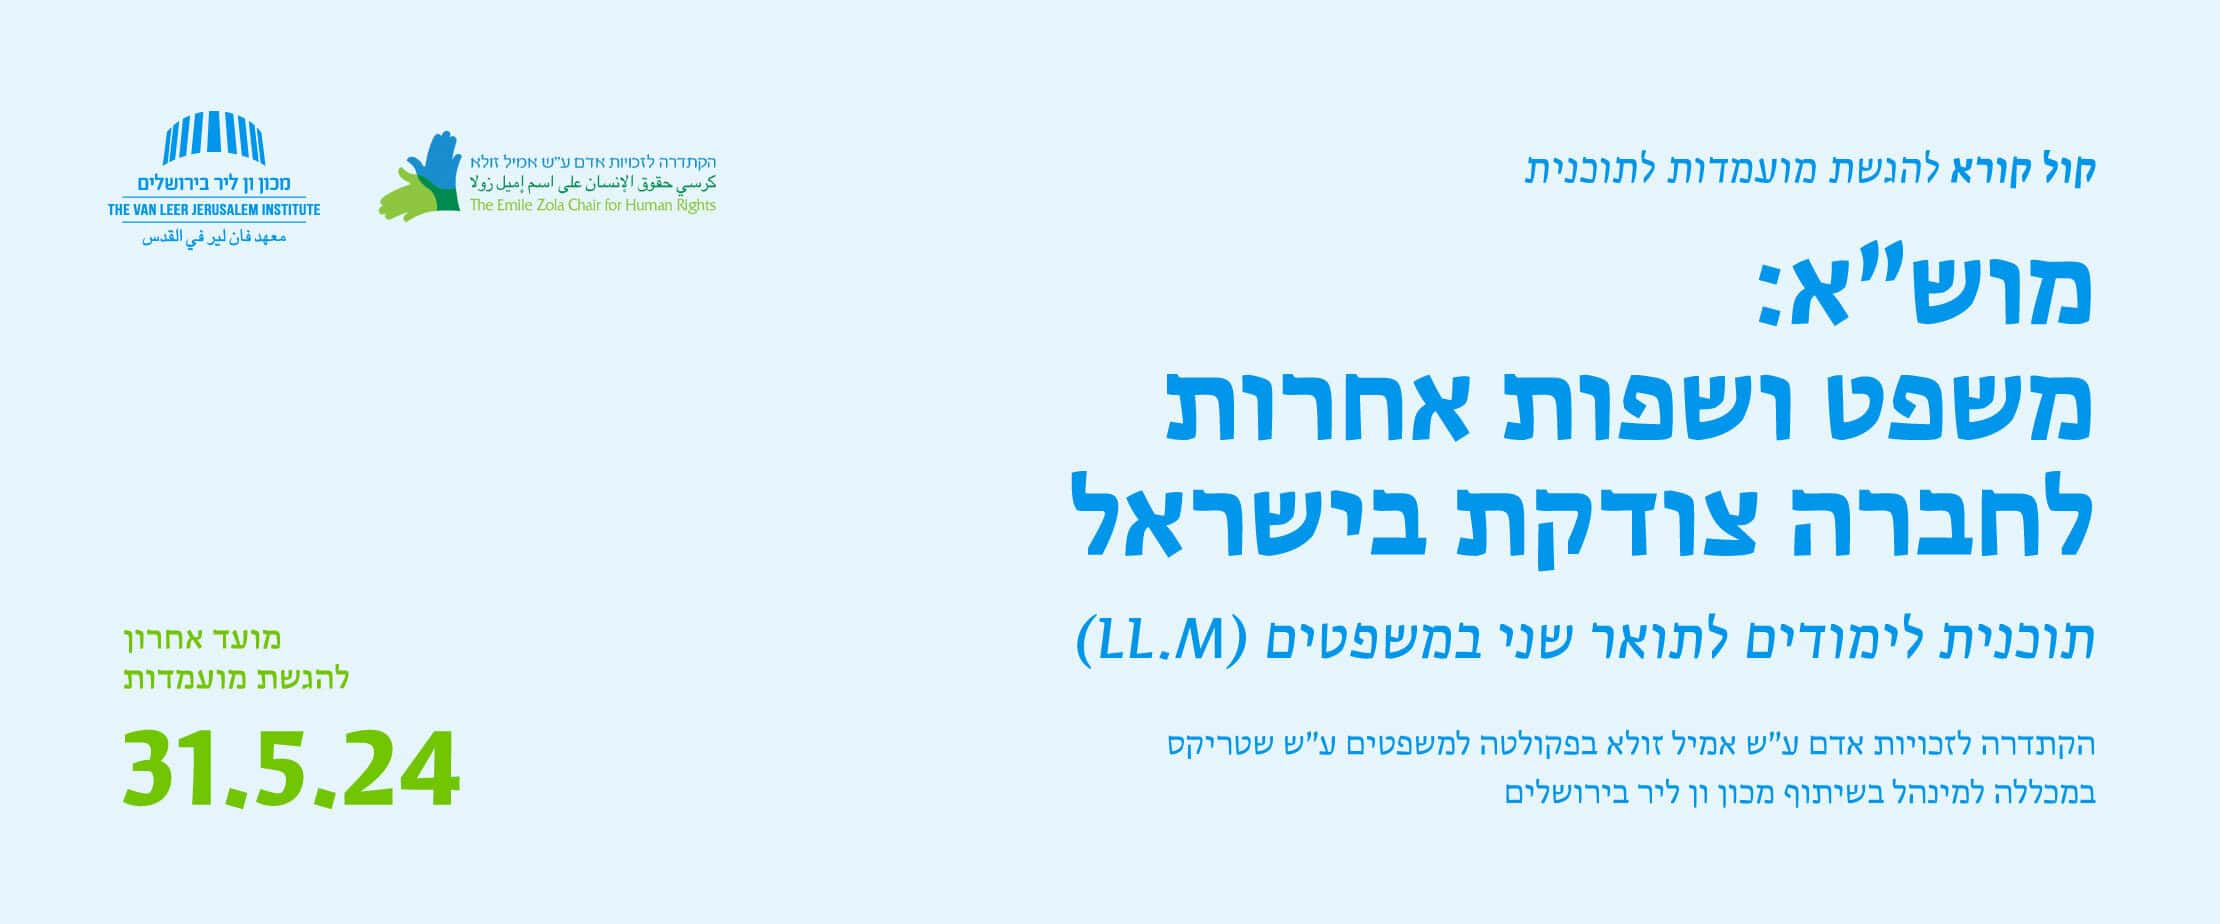 מוש"א: משפט ושפות אחרות לחברה צודקת בישראל